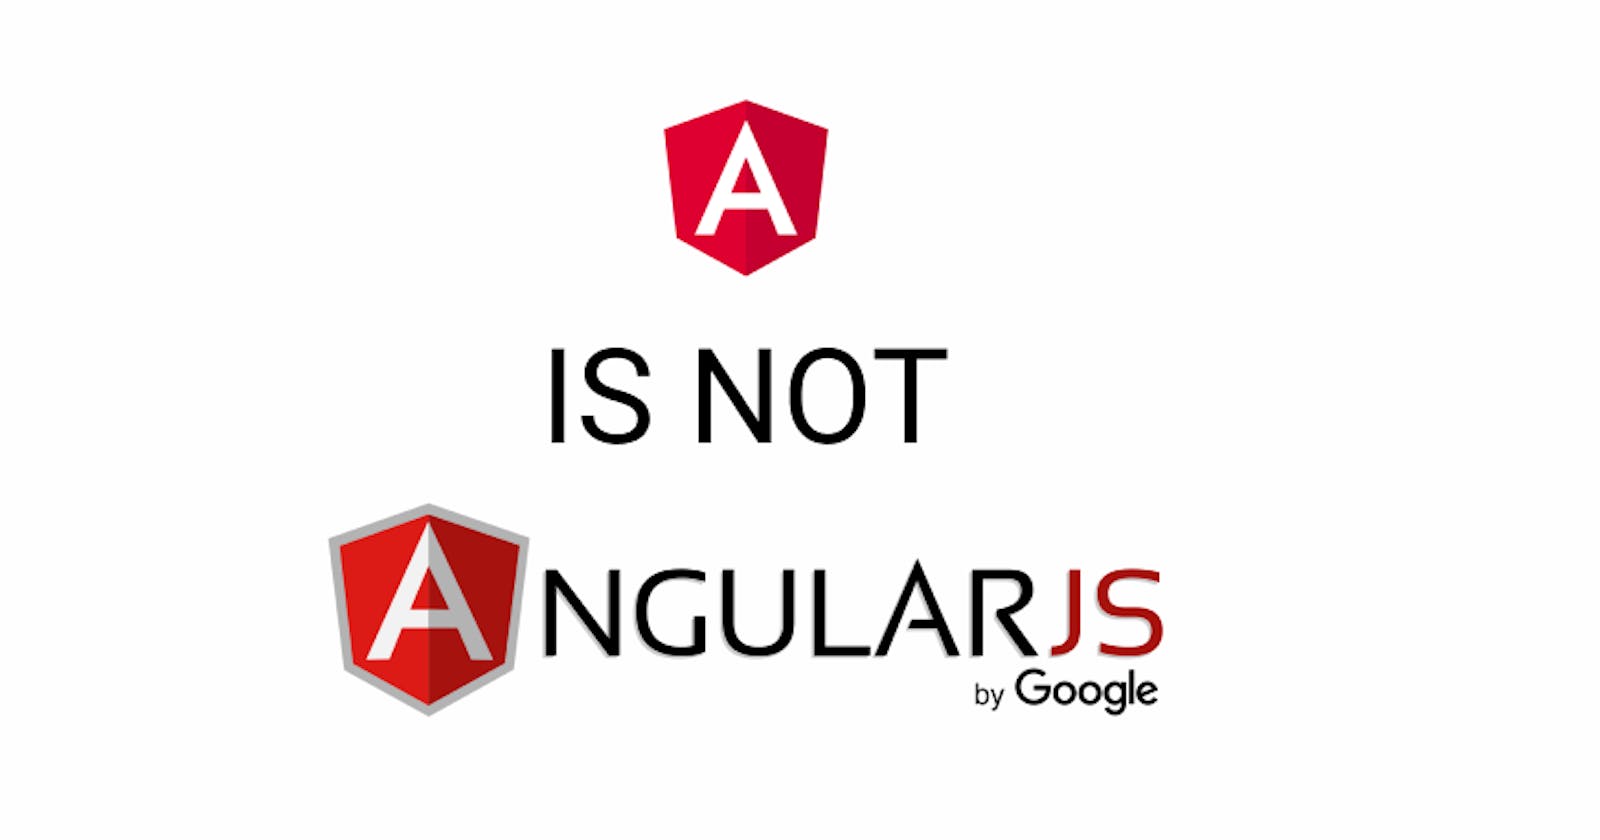 AngularJS is not Angular.